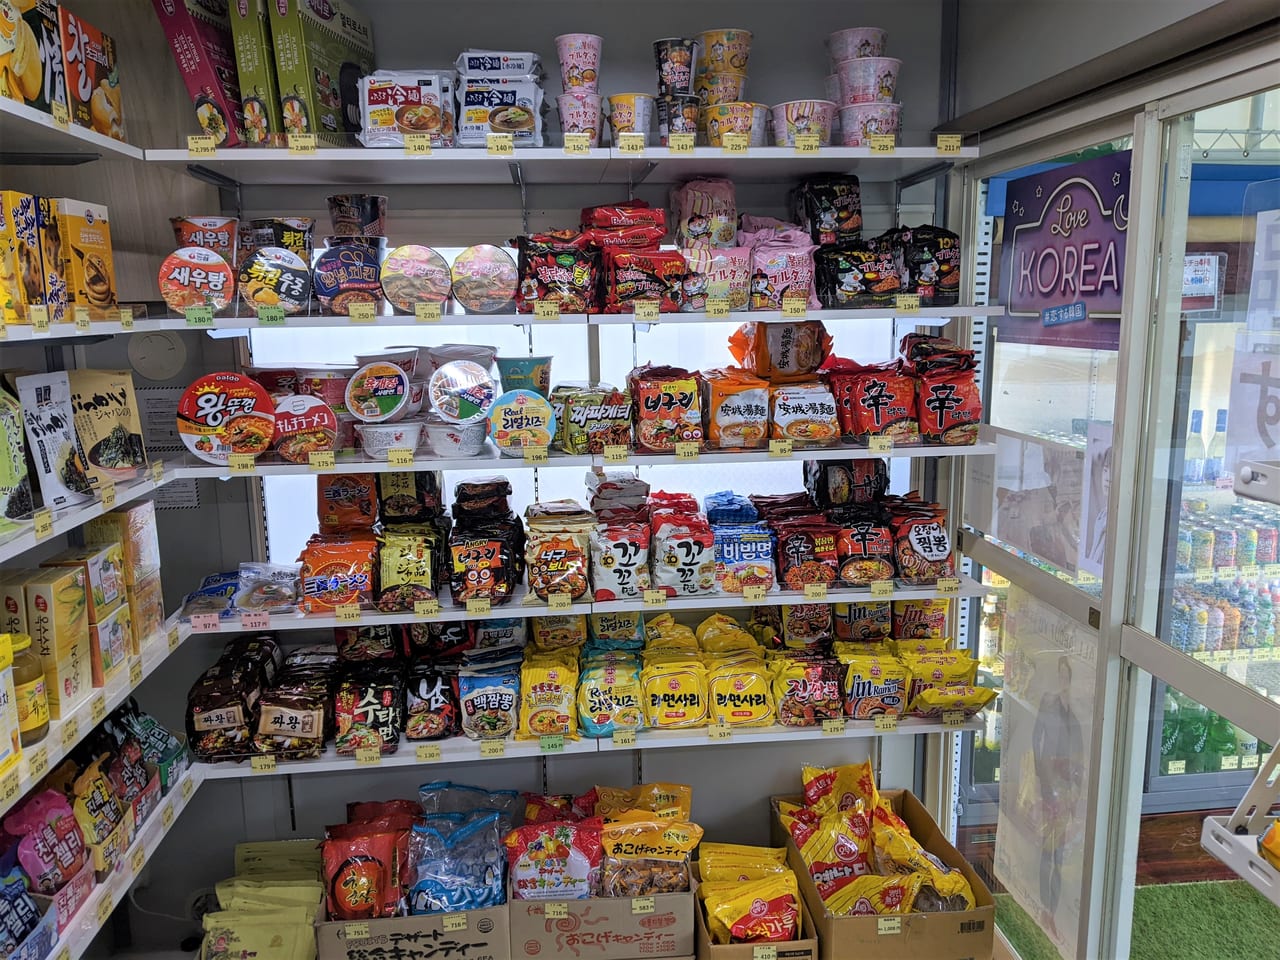 「韓国スーパーマーケット コレ」の店内